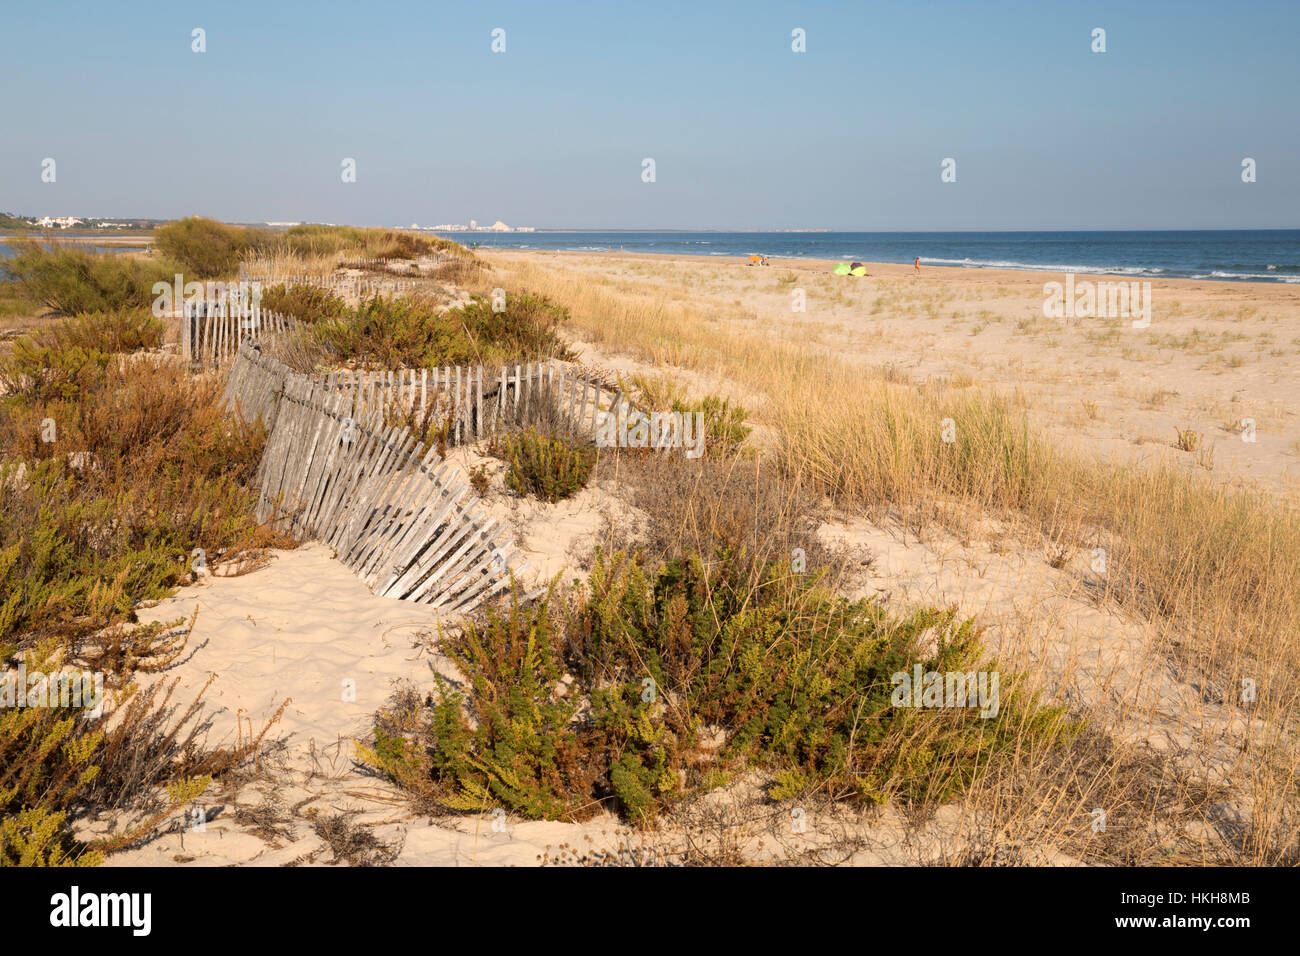 Praia de Cacela Velha beach, Cacela Velha, Algarve, Portugal, Europe Stock Photo